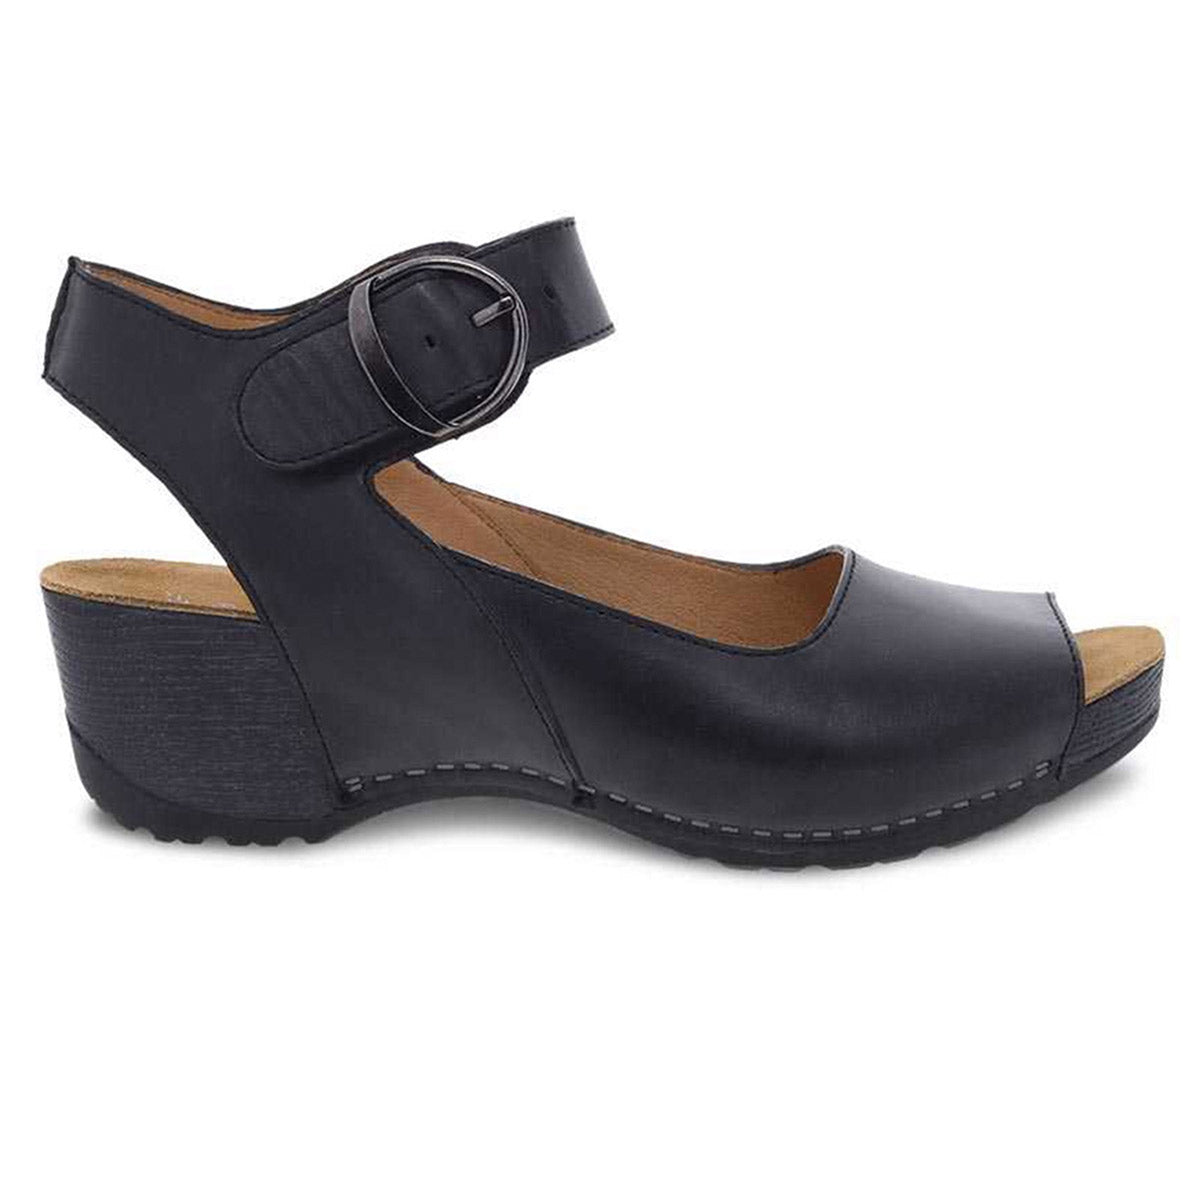 Dansko Tiana black burnished sandals: Black leather linings platform sandal with an ankle strap.